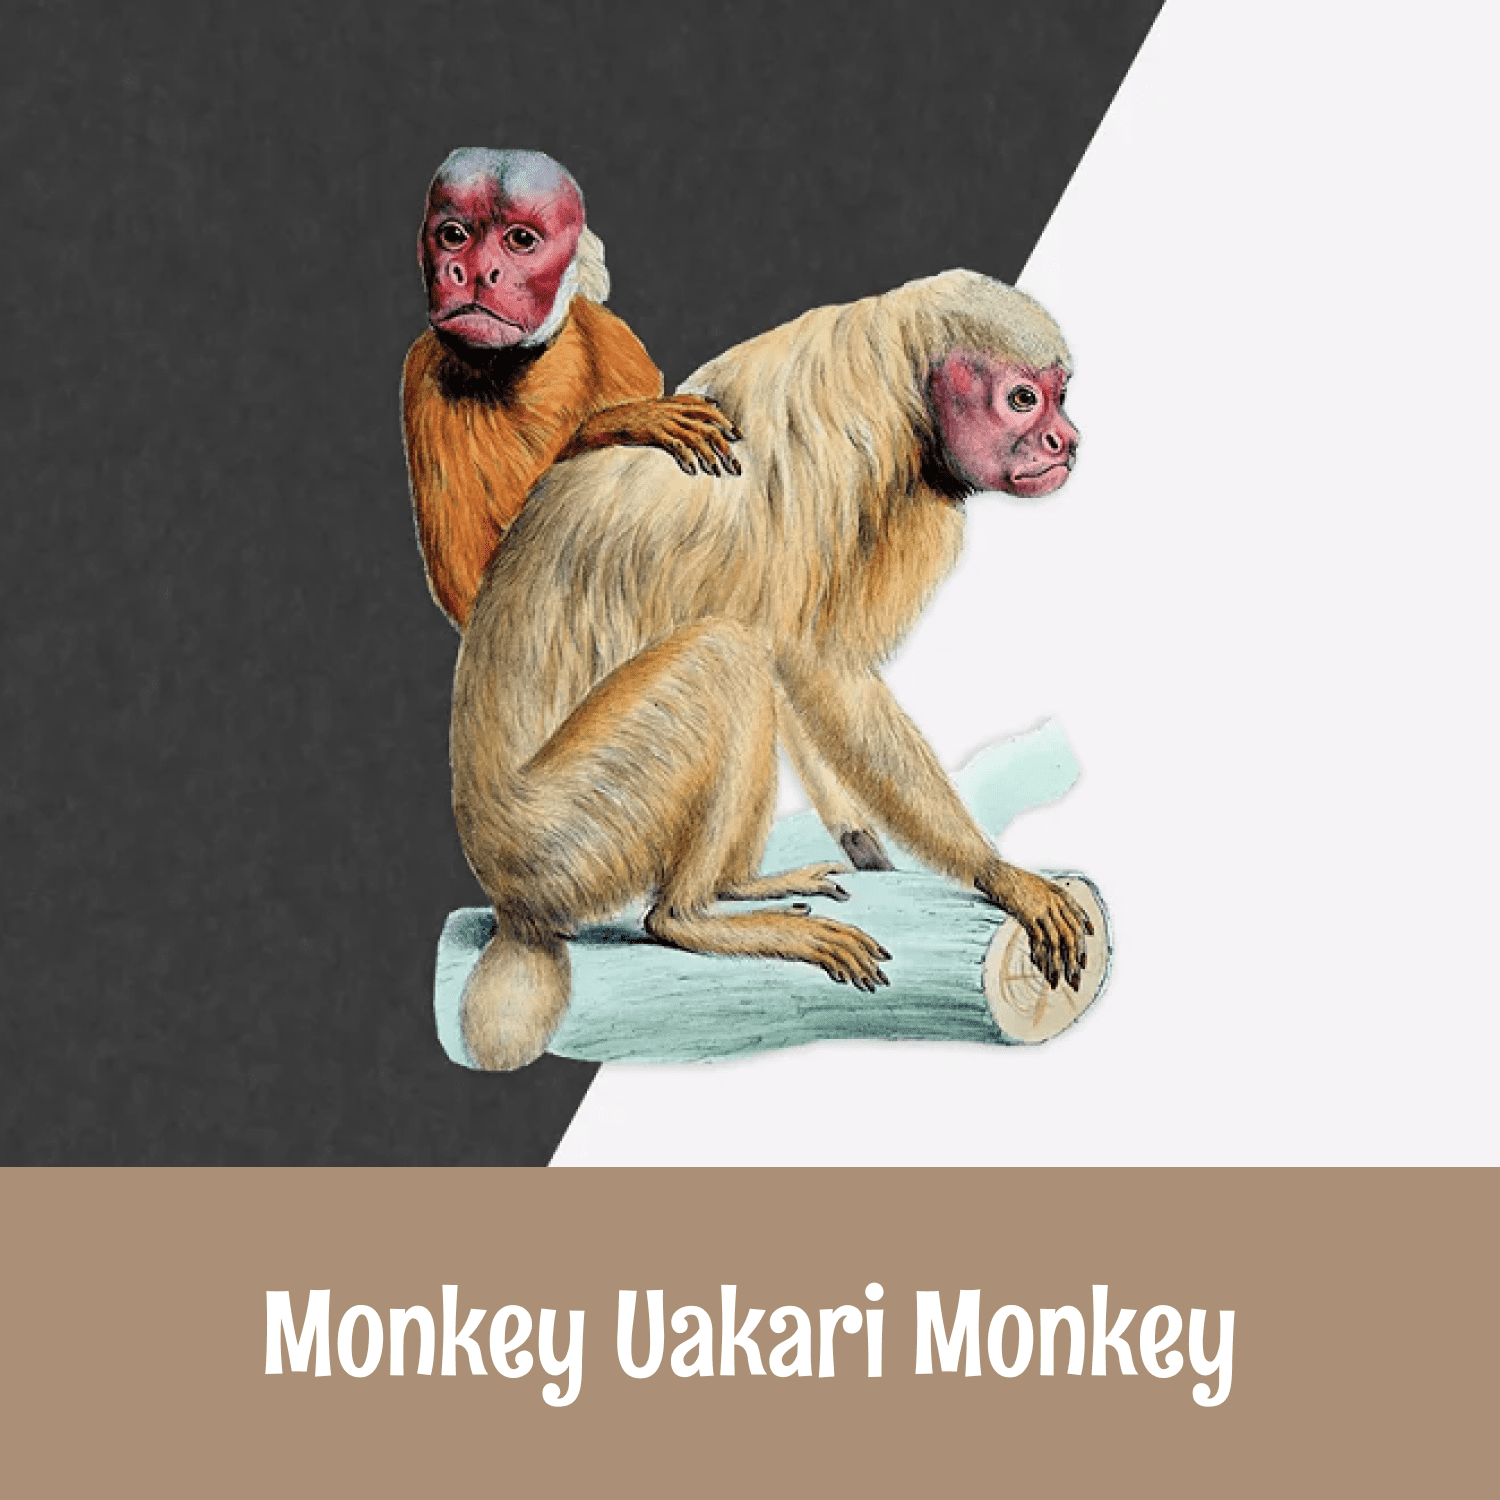 Monkey Uakari Monkey.